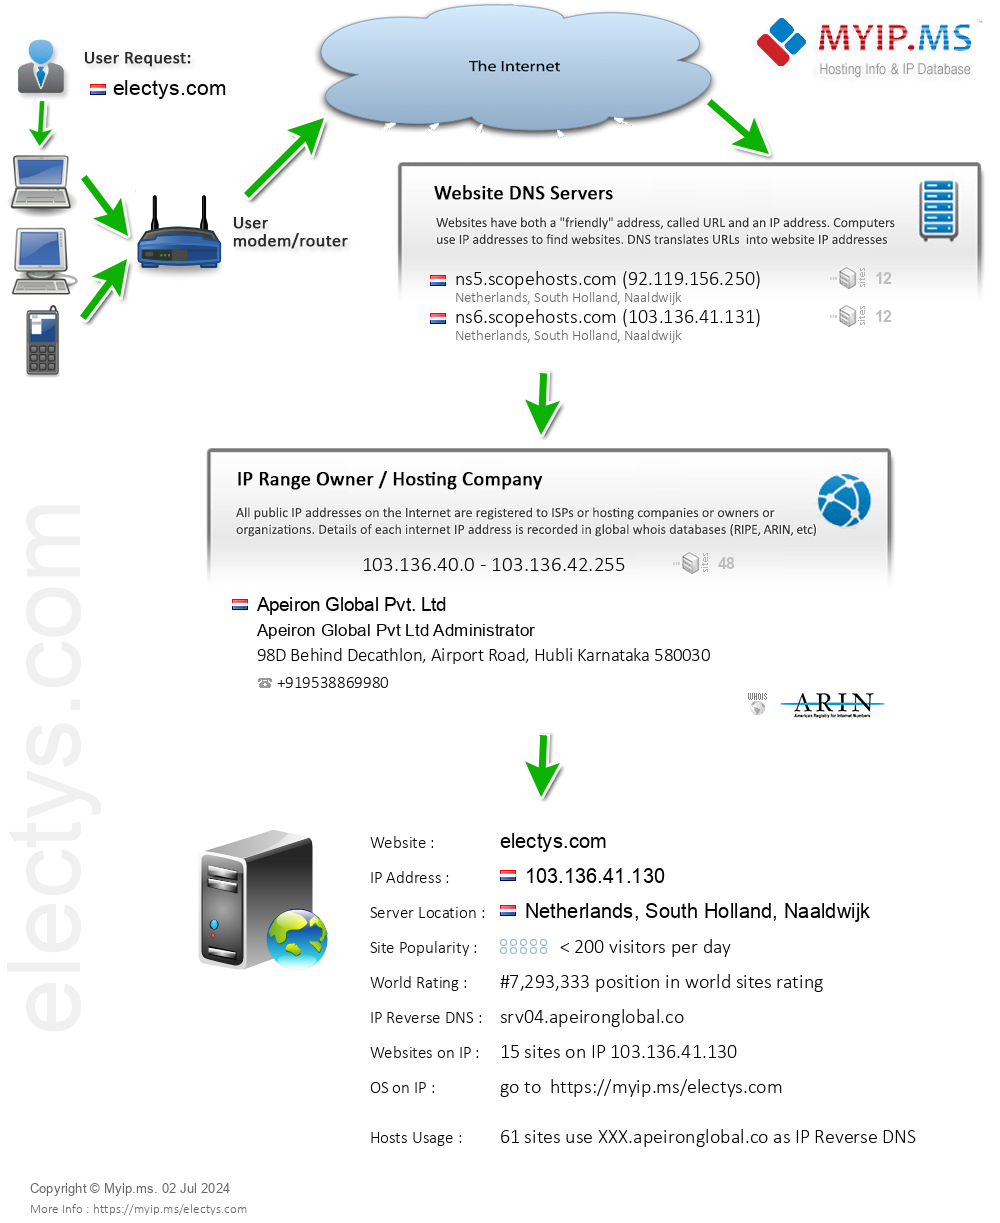 Electys.com - Website Hosting Visual IP Diagram